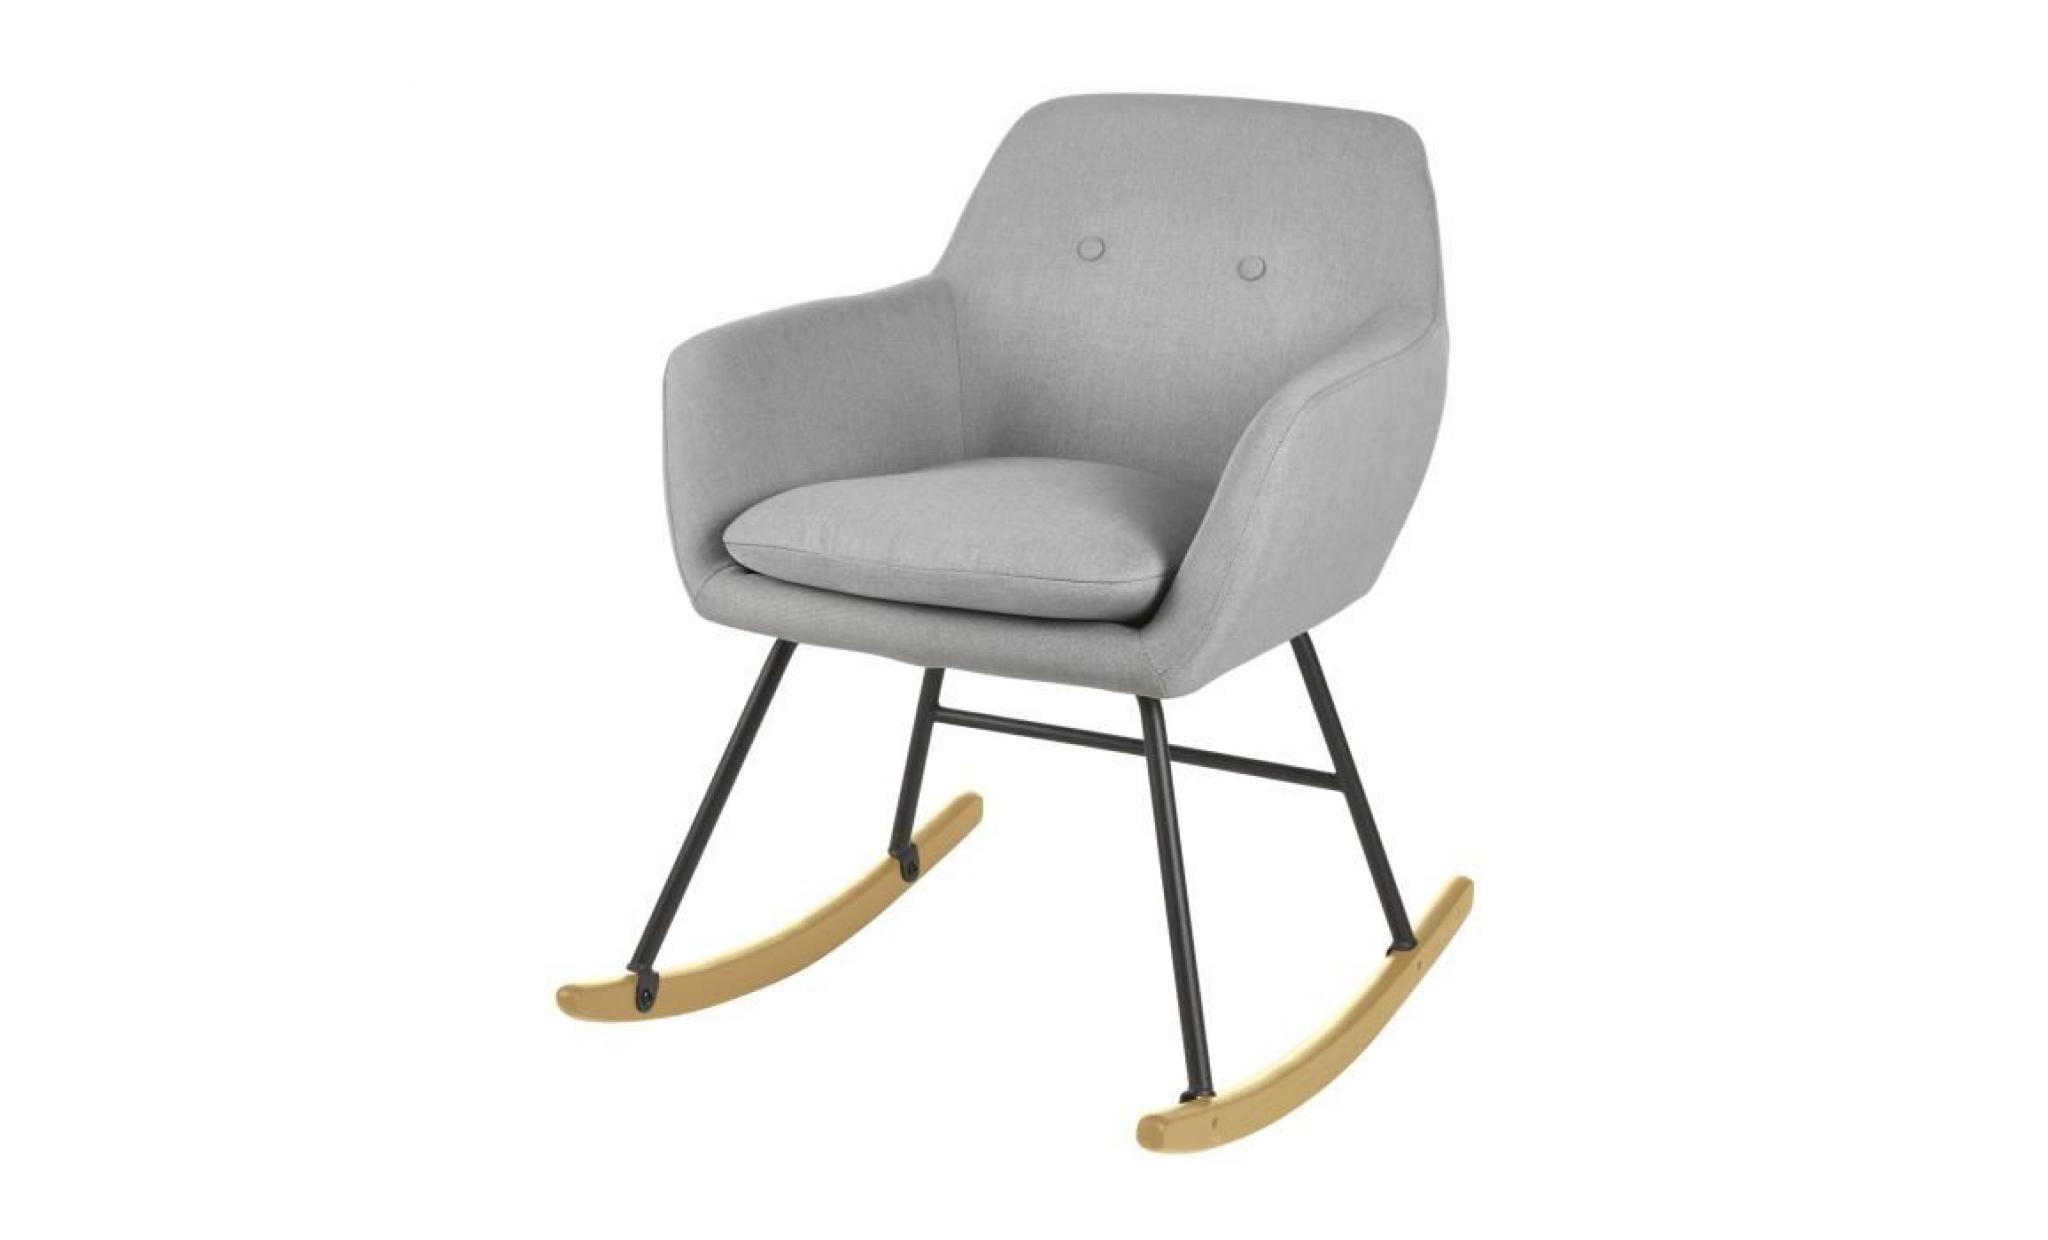 jens fauteuil à bascule rocking chair   tissu effet lin gris clair   scandinave   l 63 x p 75 cm